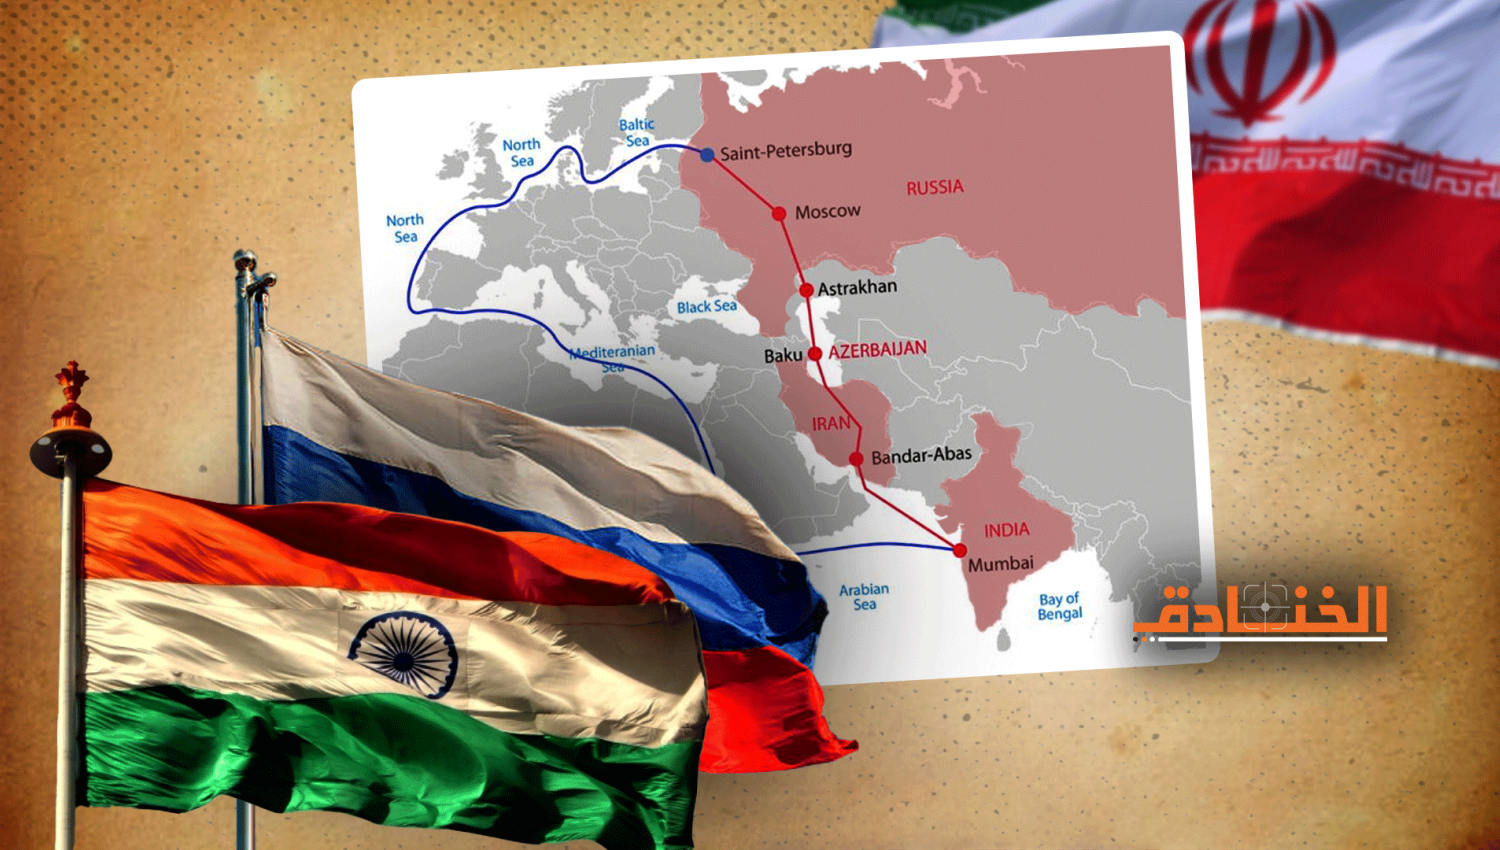 إيران وسيط تجاري بين روسيا والهند: ممر جديد قيد التجربة